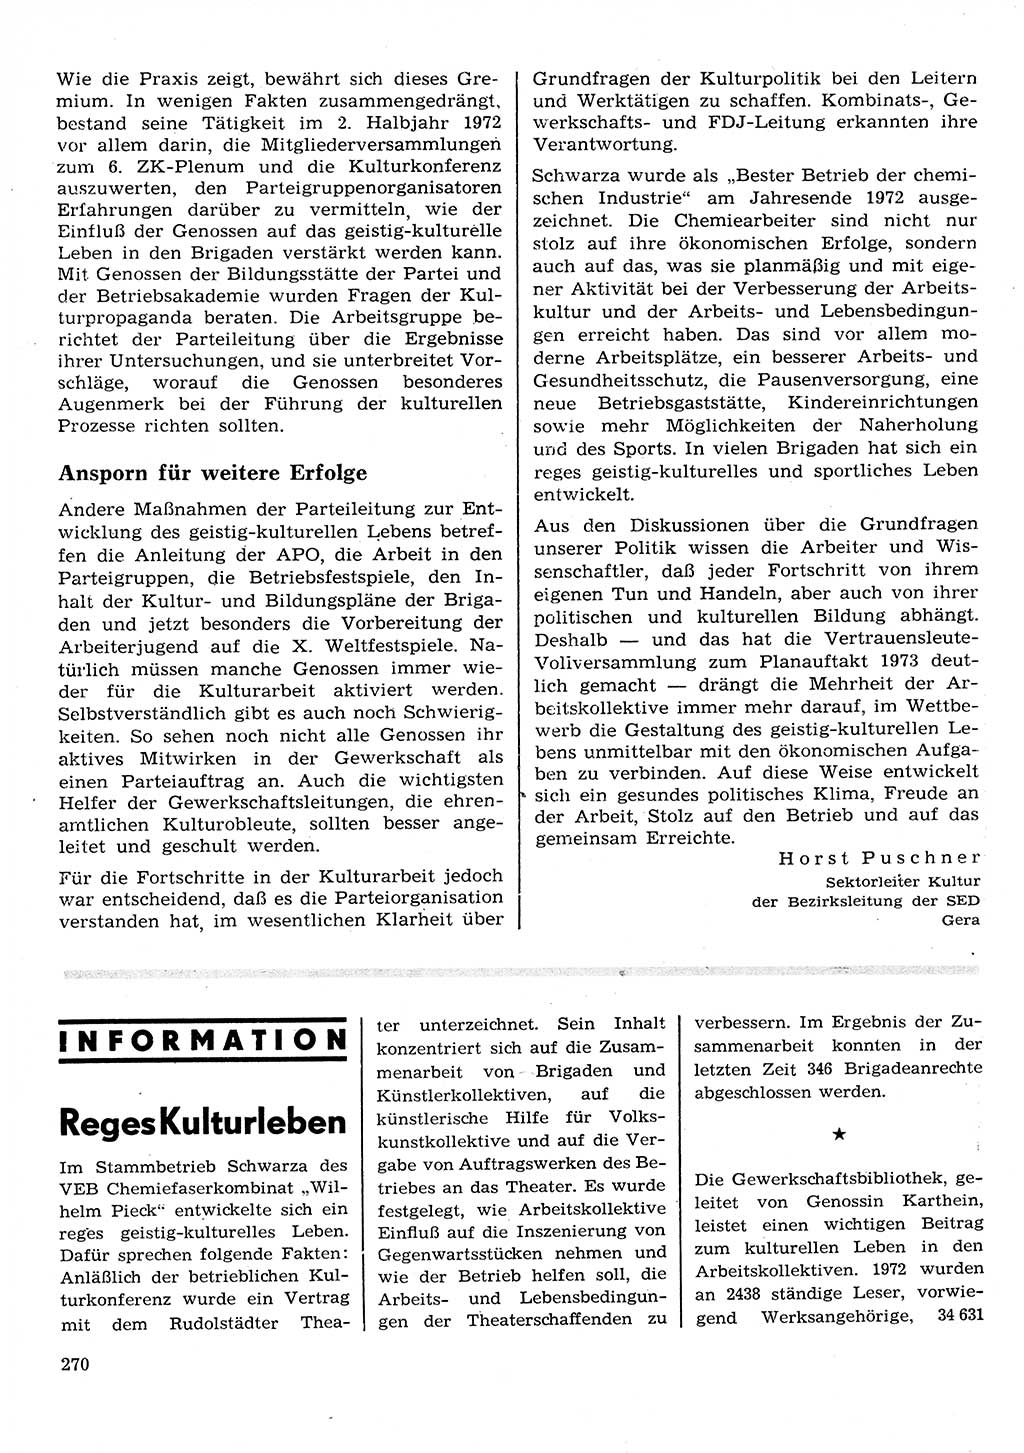 Neuer Weg (NW), Organ des Zentralkomitees (ZK) der SED (Sozialistische Einheitspartei Deutschlands) für Fragen des Parteilebens, 28. Jahrgang [Deutsche Demokratische Republik (DDR)] 1973, Seite 270 (NW ZK SED DDR 1973, S. 270)